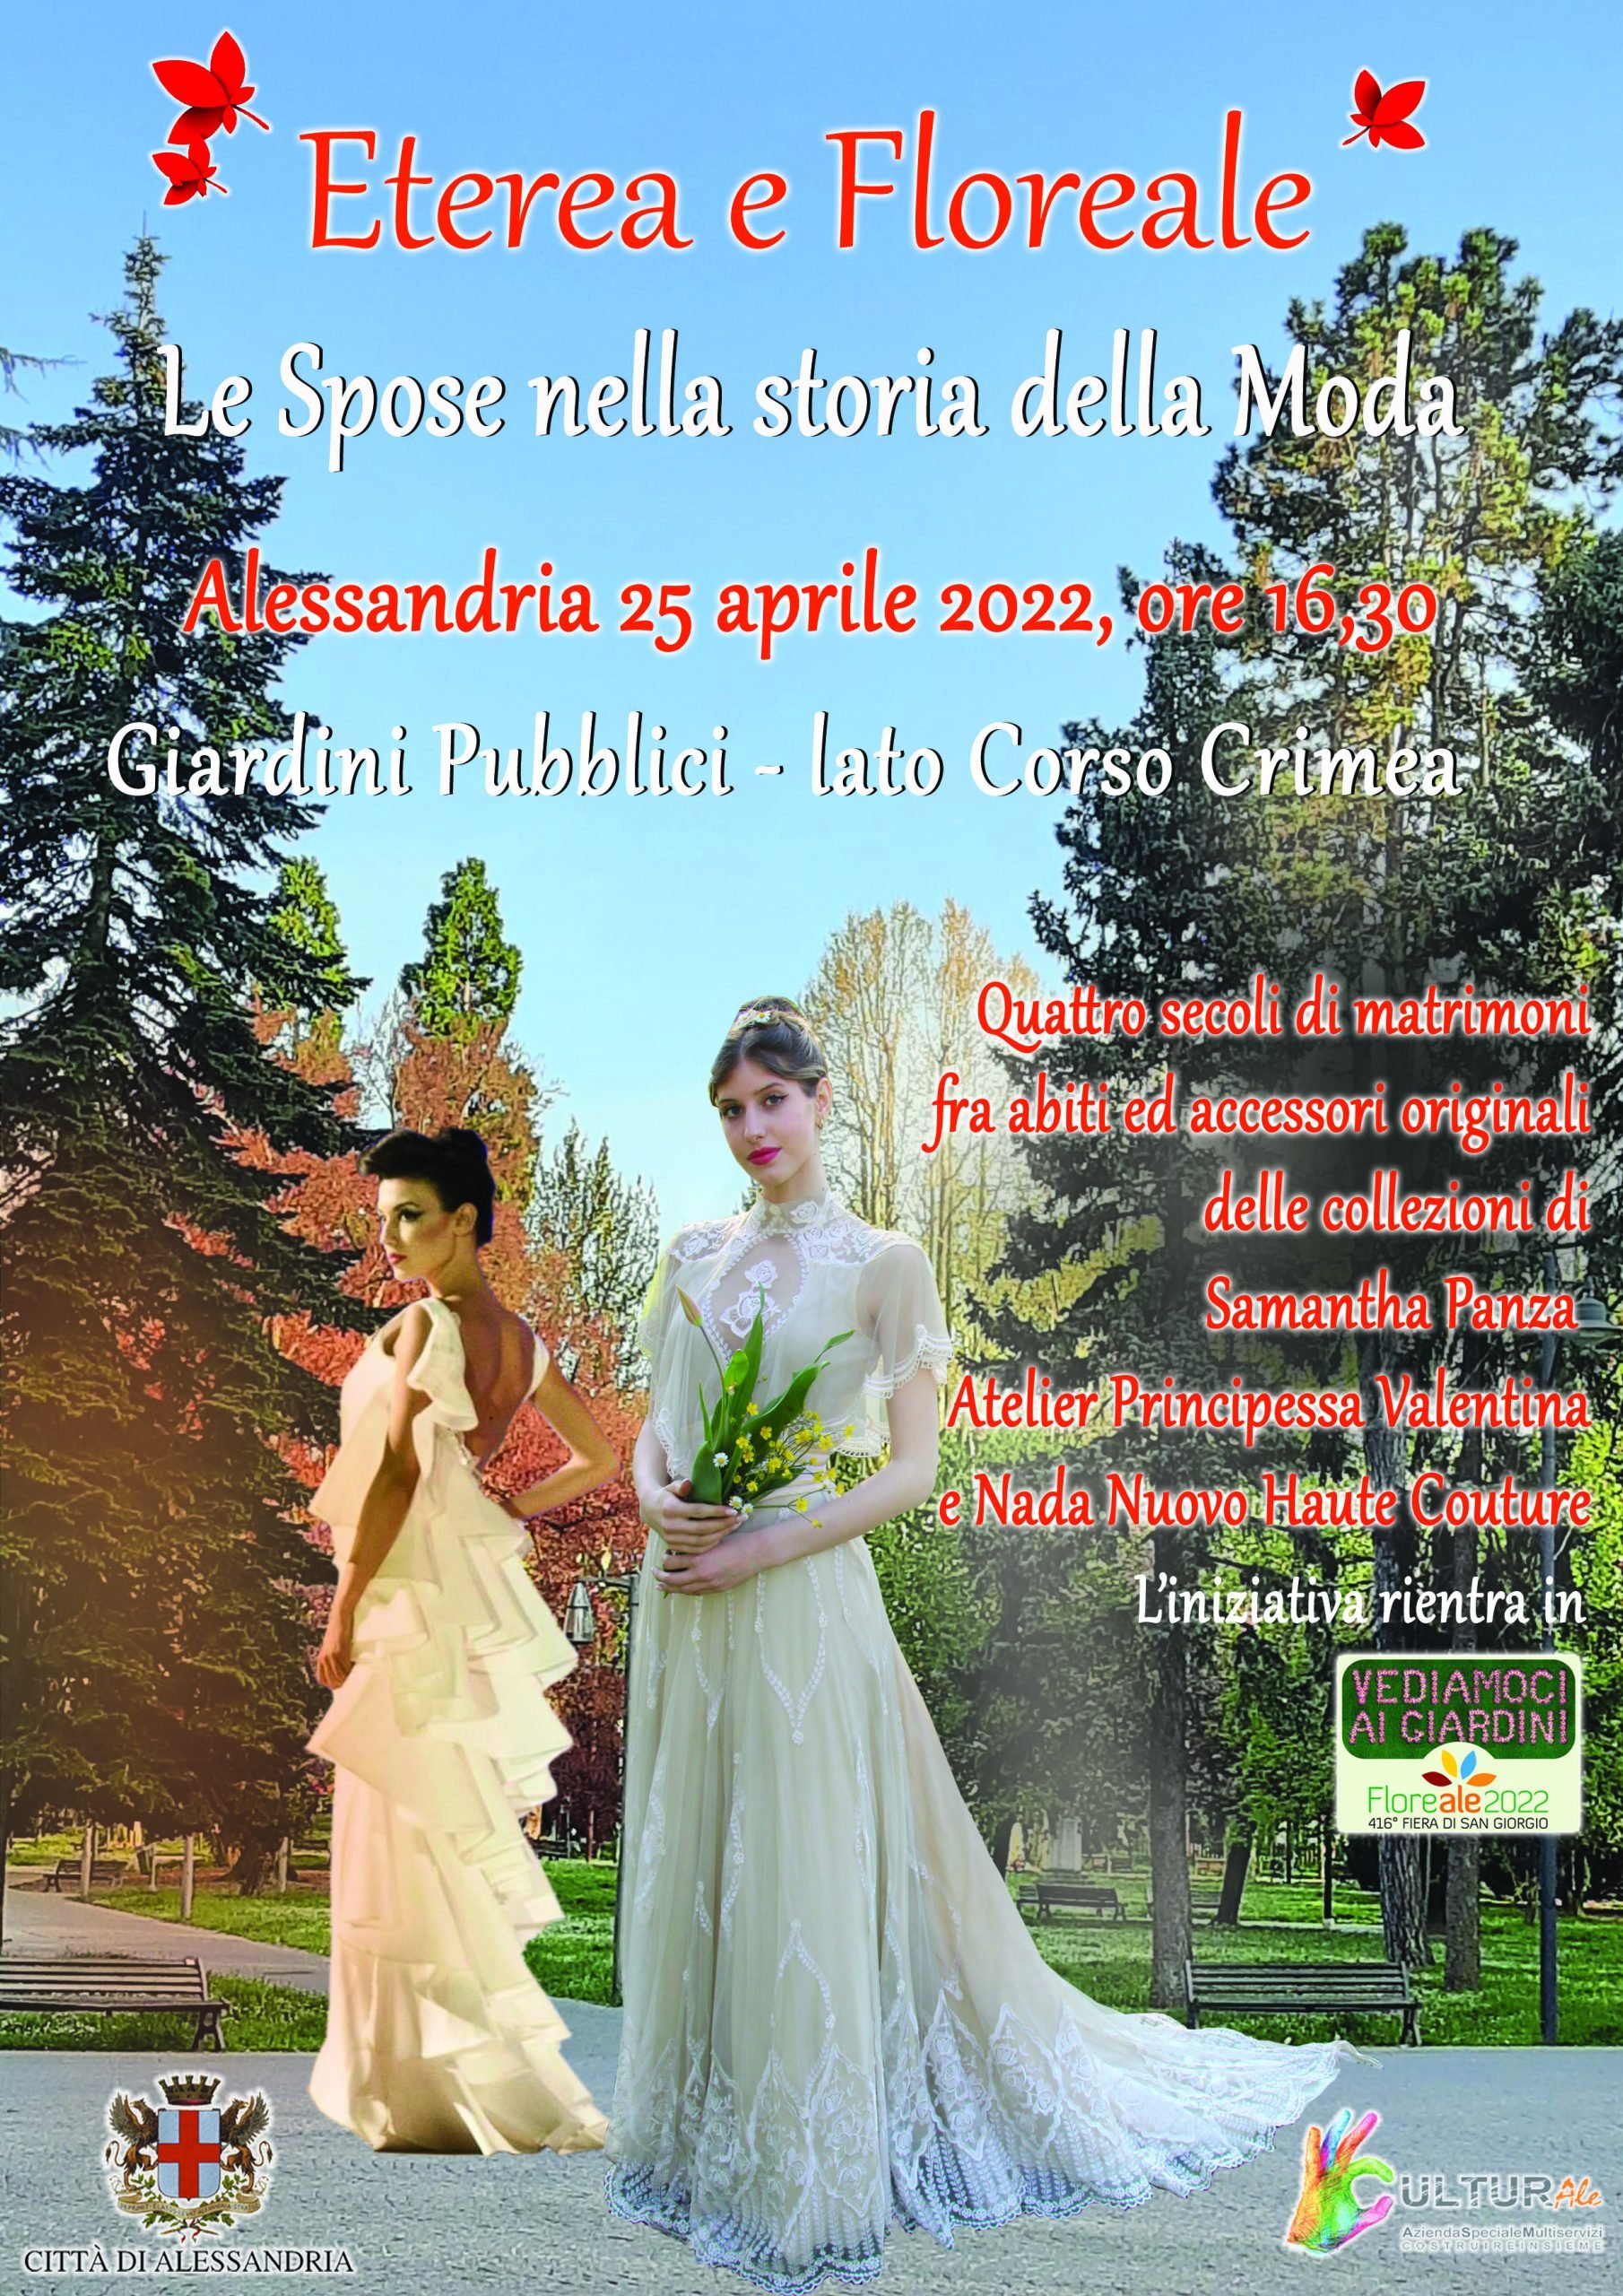 Il 25 aprile ai giardini pubblici di Alessandria “Le Spose nella storia della Moda”